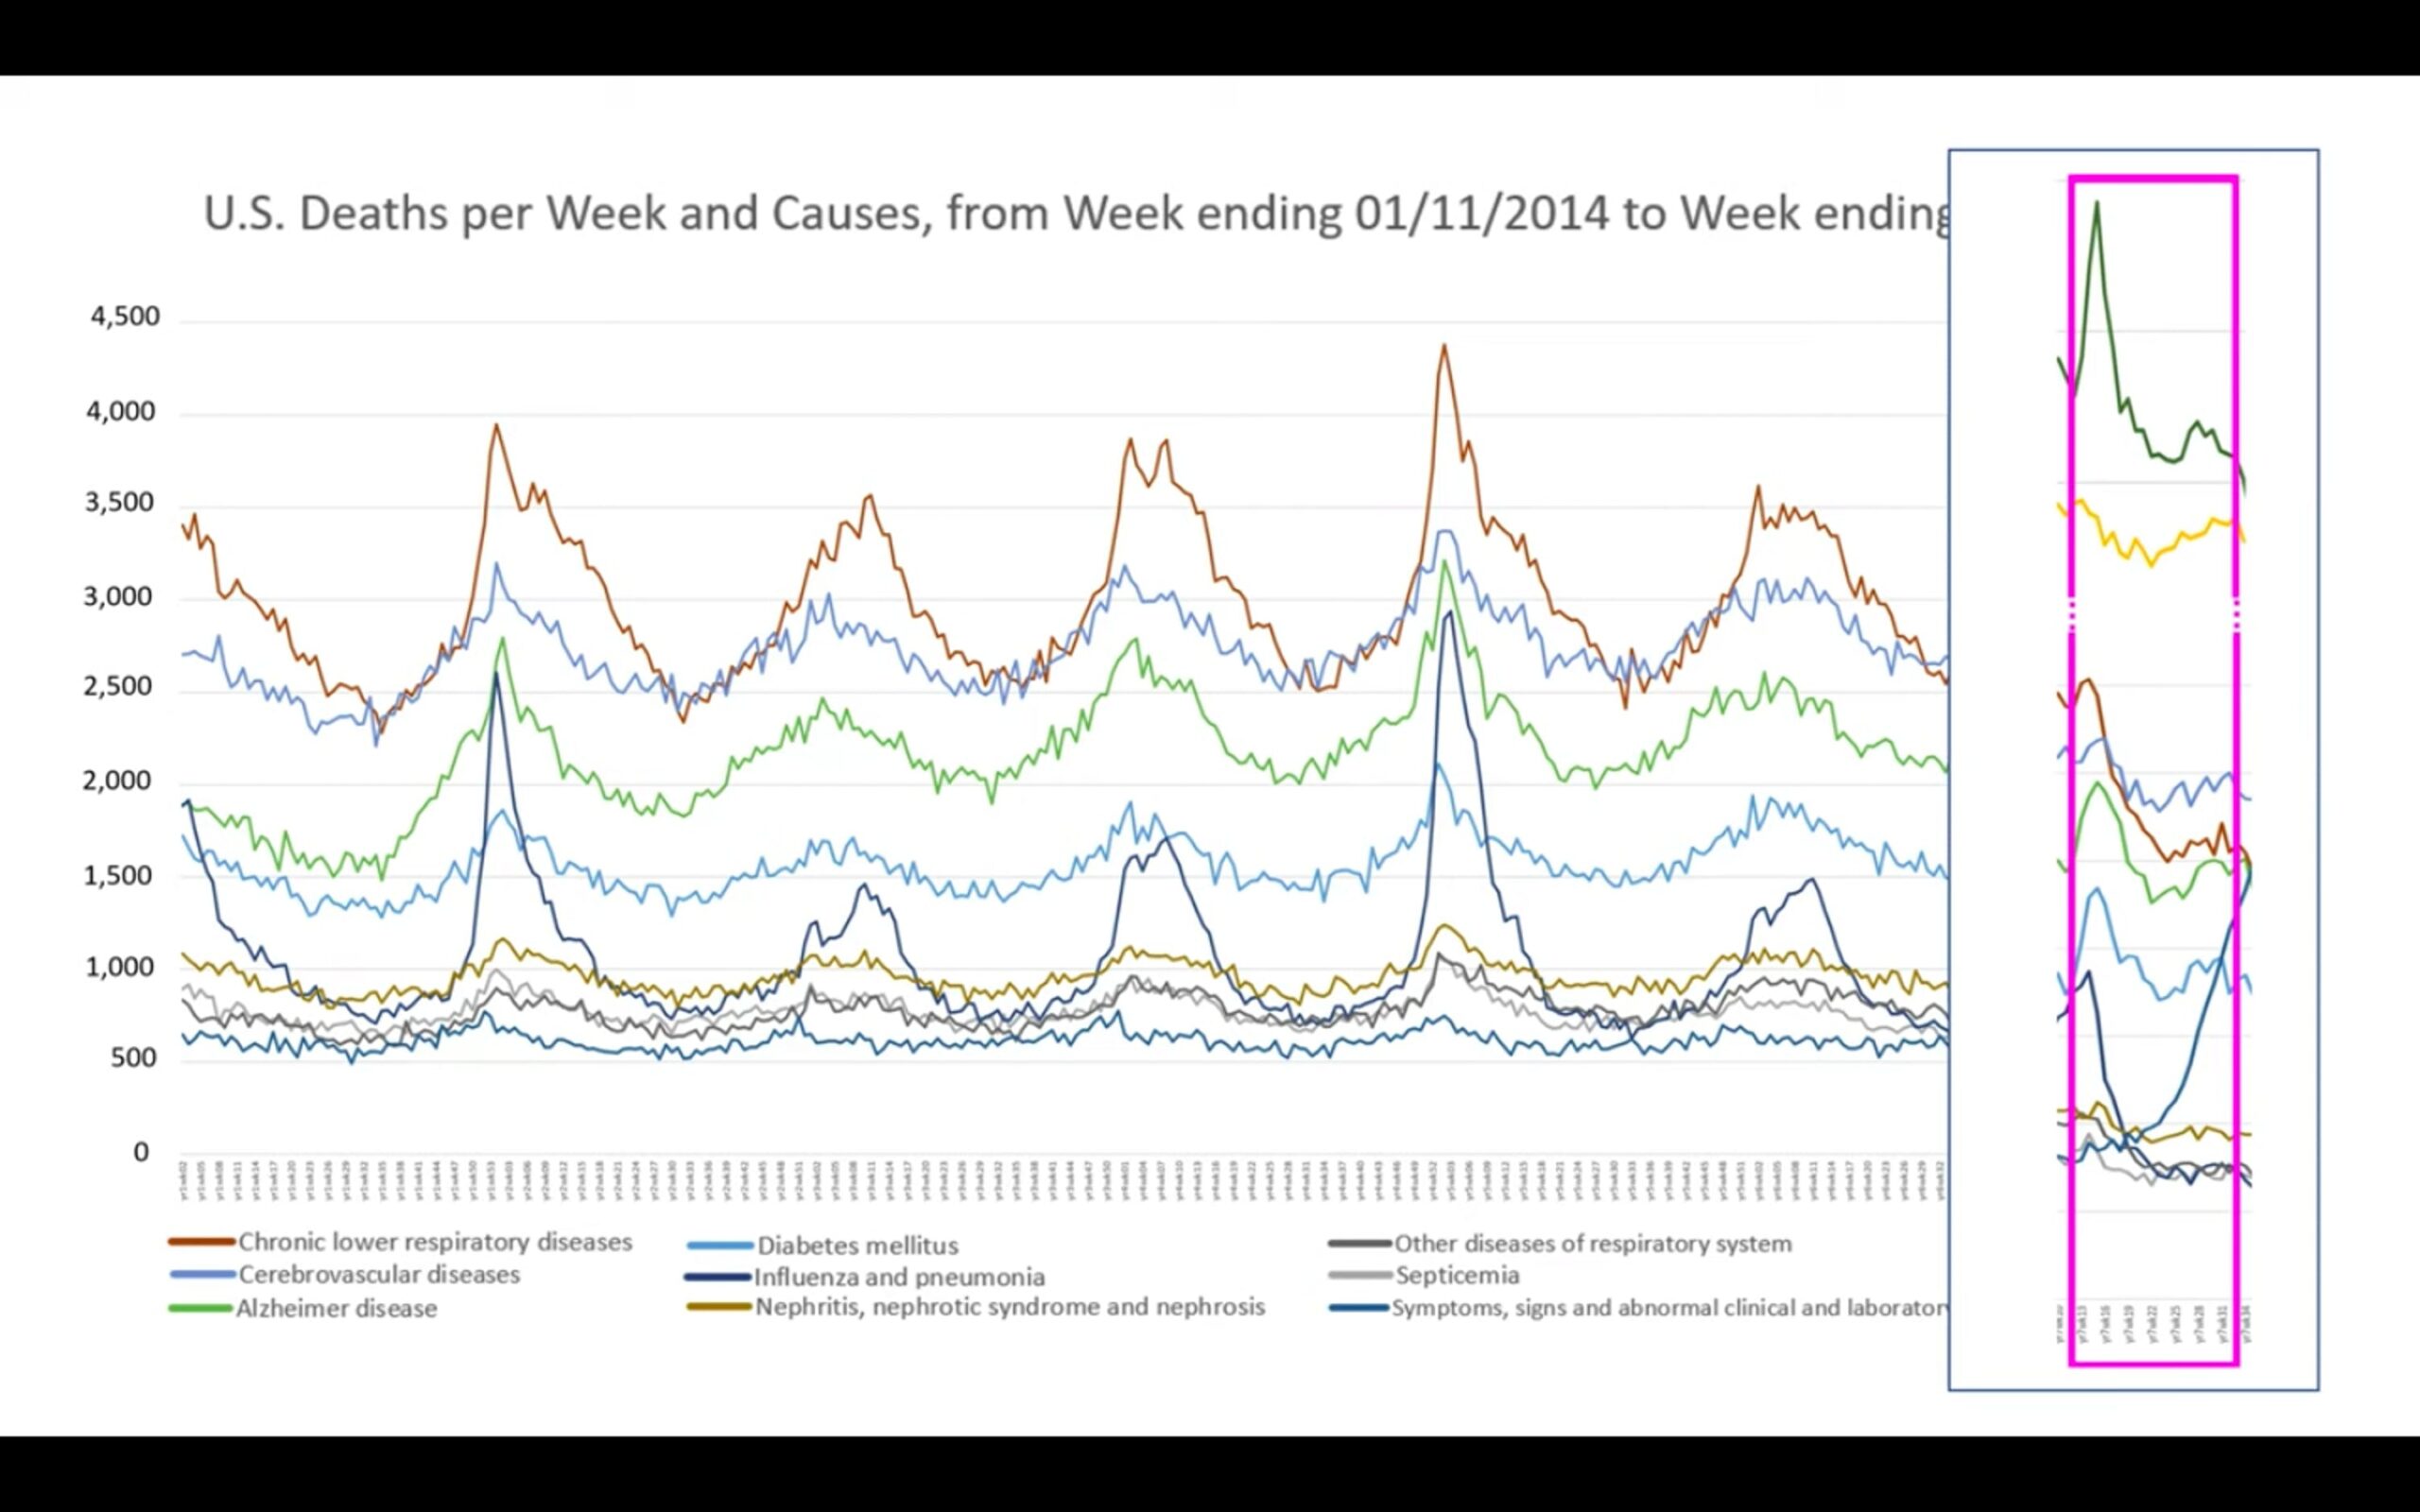 U.S. Deaths per Week and Causes, from Week ending 01/11/2014